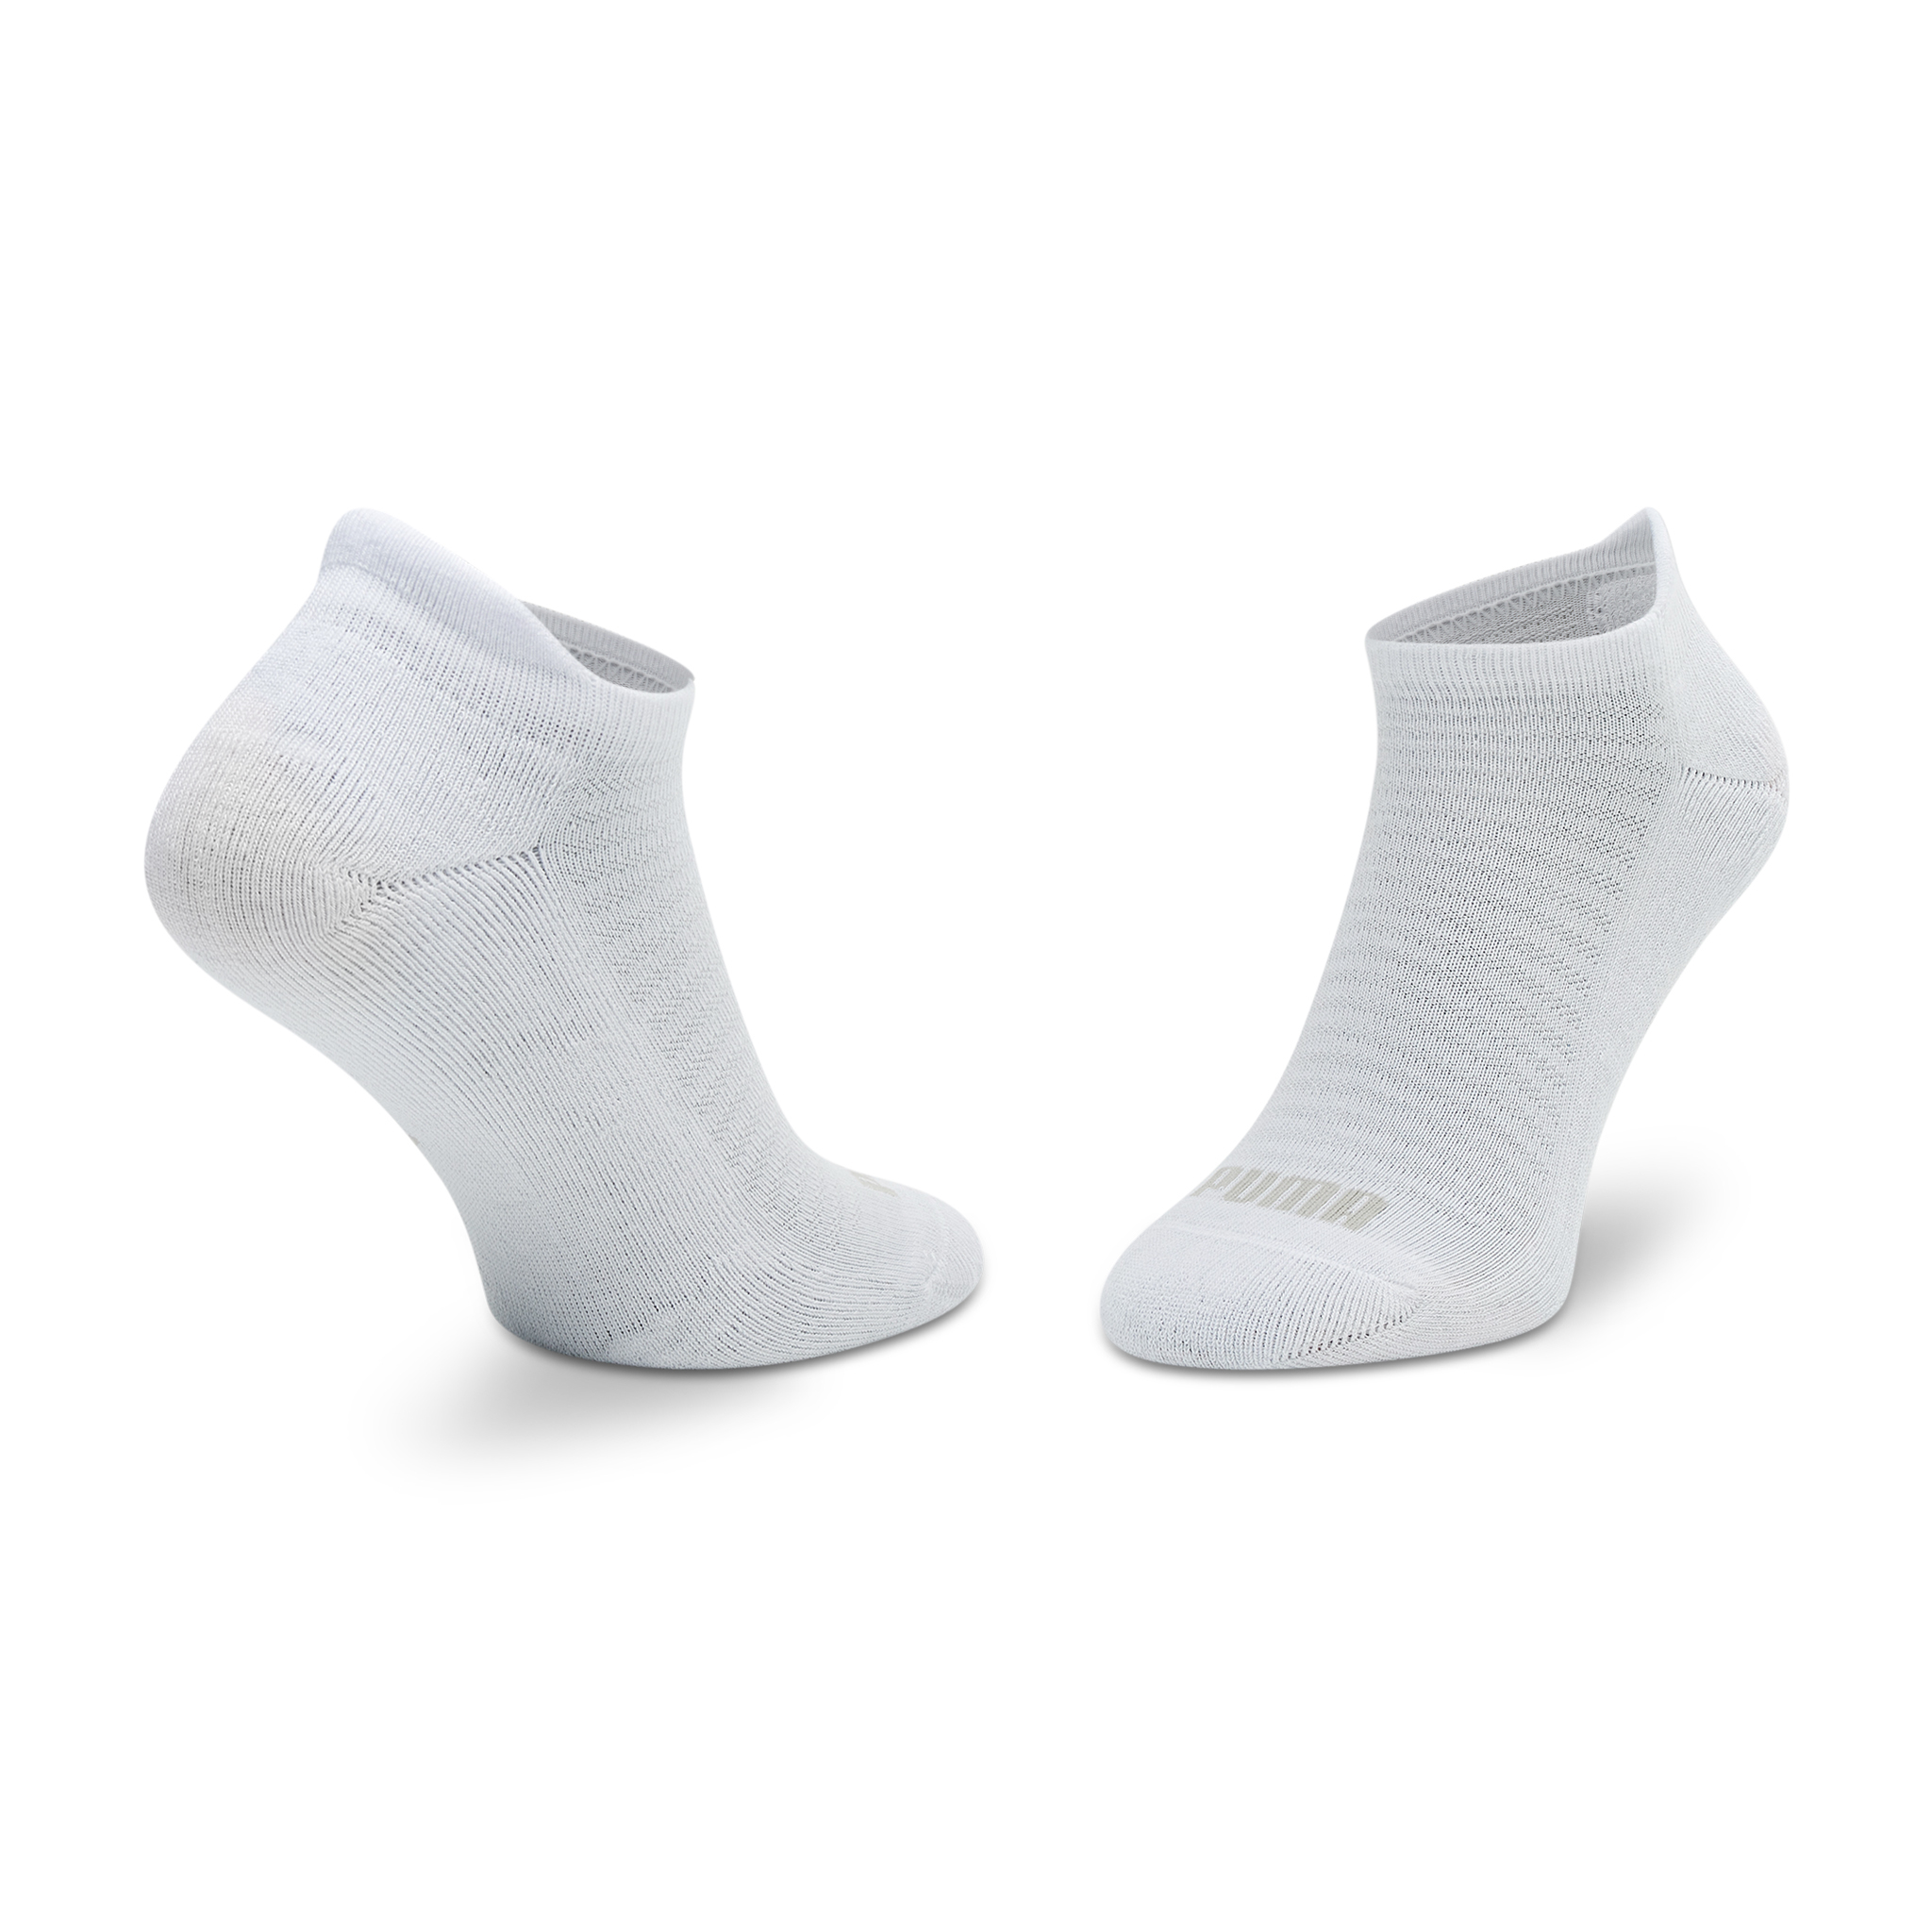 Sada 2 párů dámských nízkých ponožek Puma - 907955 02 White